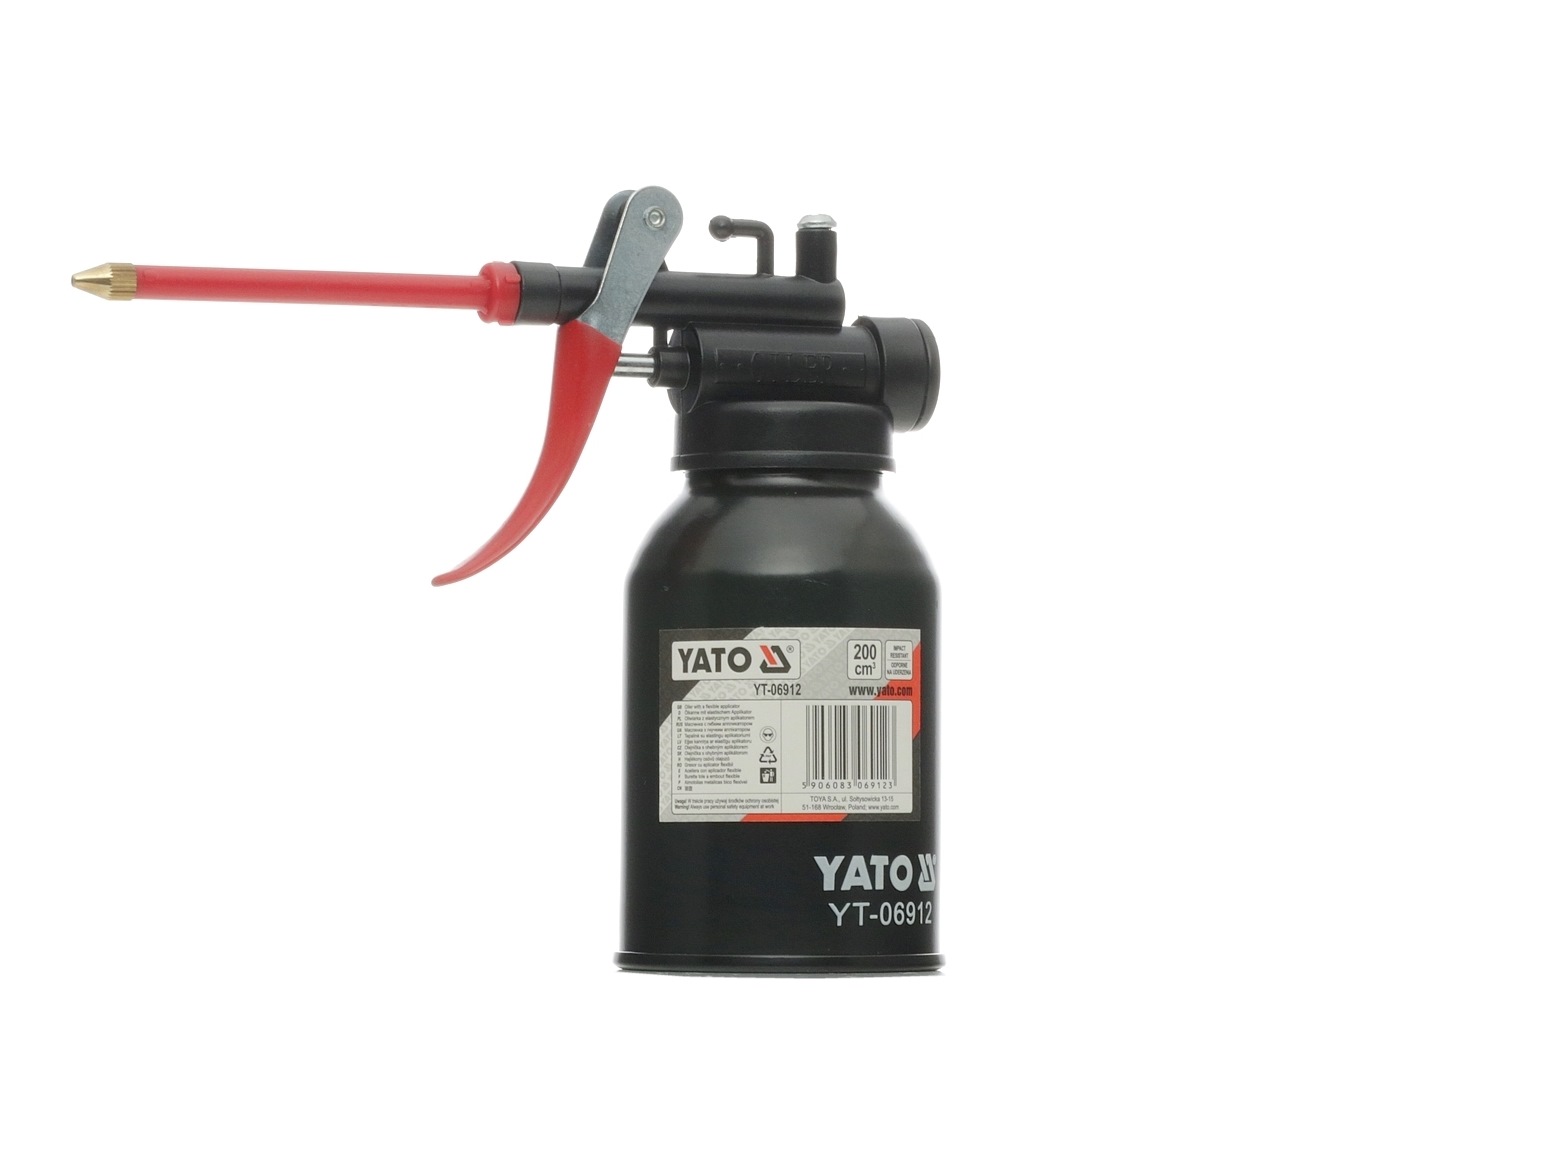 YATO 0.200l Grease Pump YT-06912 buy